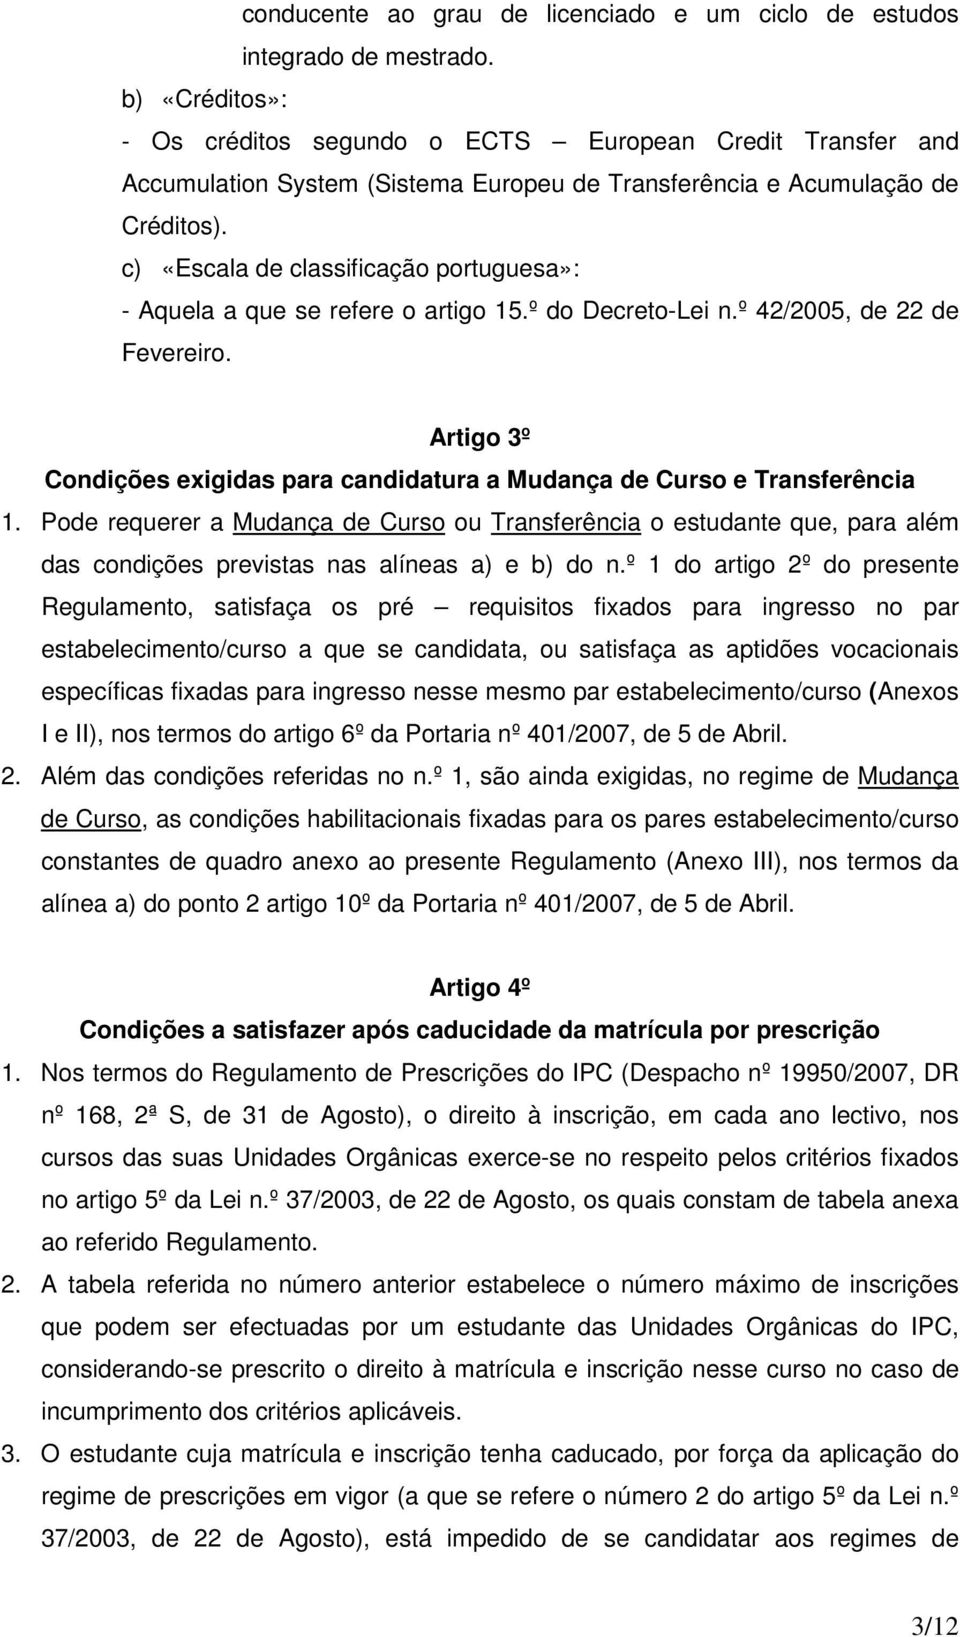 c) «Escala de classificação portuguesa»: - Aquela a que se refere o artigo 15.º do Decreto-Lei n.º 42/2005, de 22 de Fevereiro.